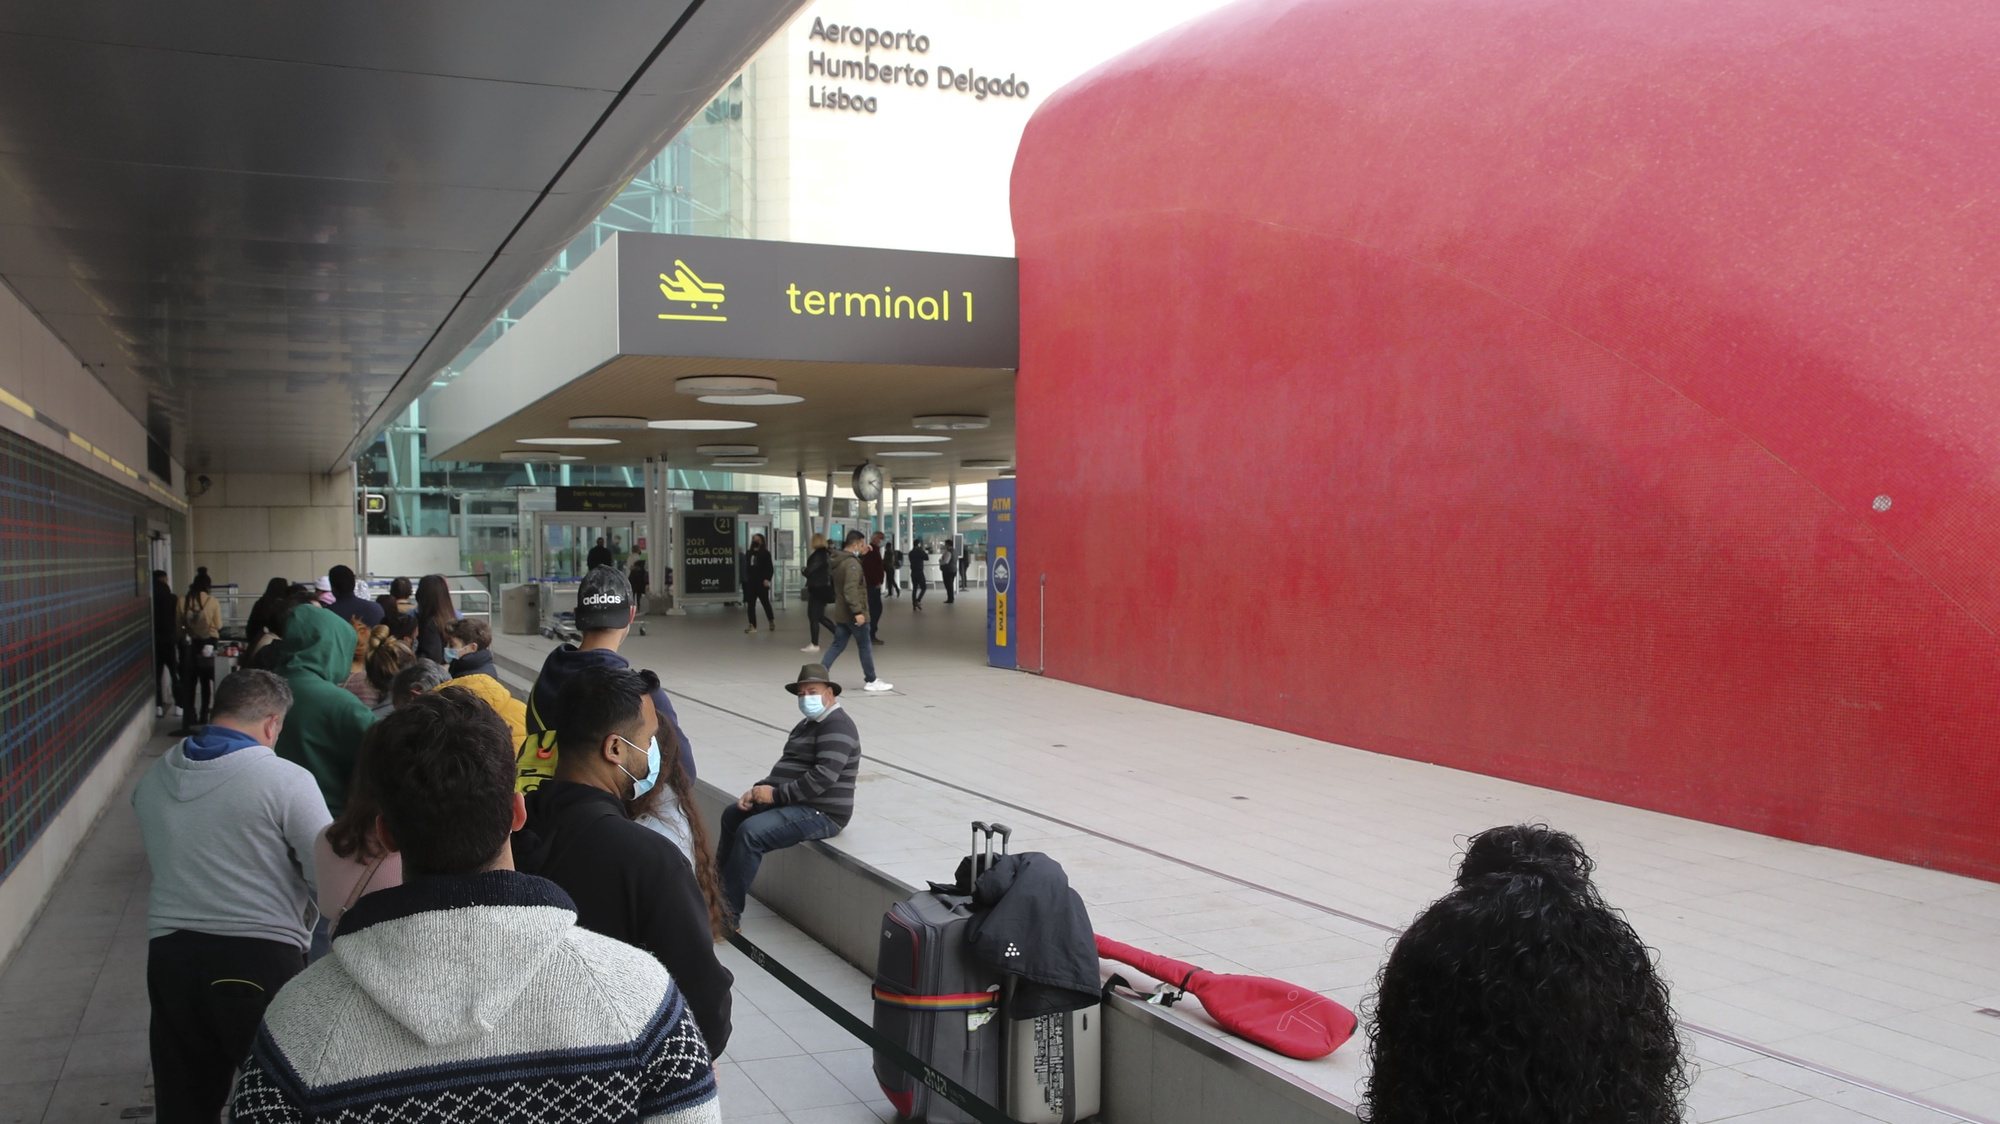 Passageiros aguardam na fila para testes à covid-19 no Aeroporto de Lisboa, responsável do laboratório diz que filas existem porque é o único local aberto em Lisboa para fazer teste Covid, 02 de janeiro de 2022. MANUEL ALMEIDA/LUSA